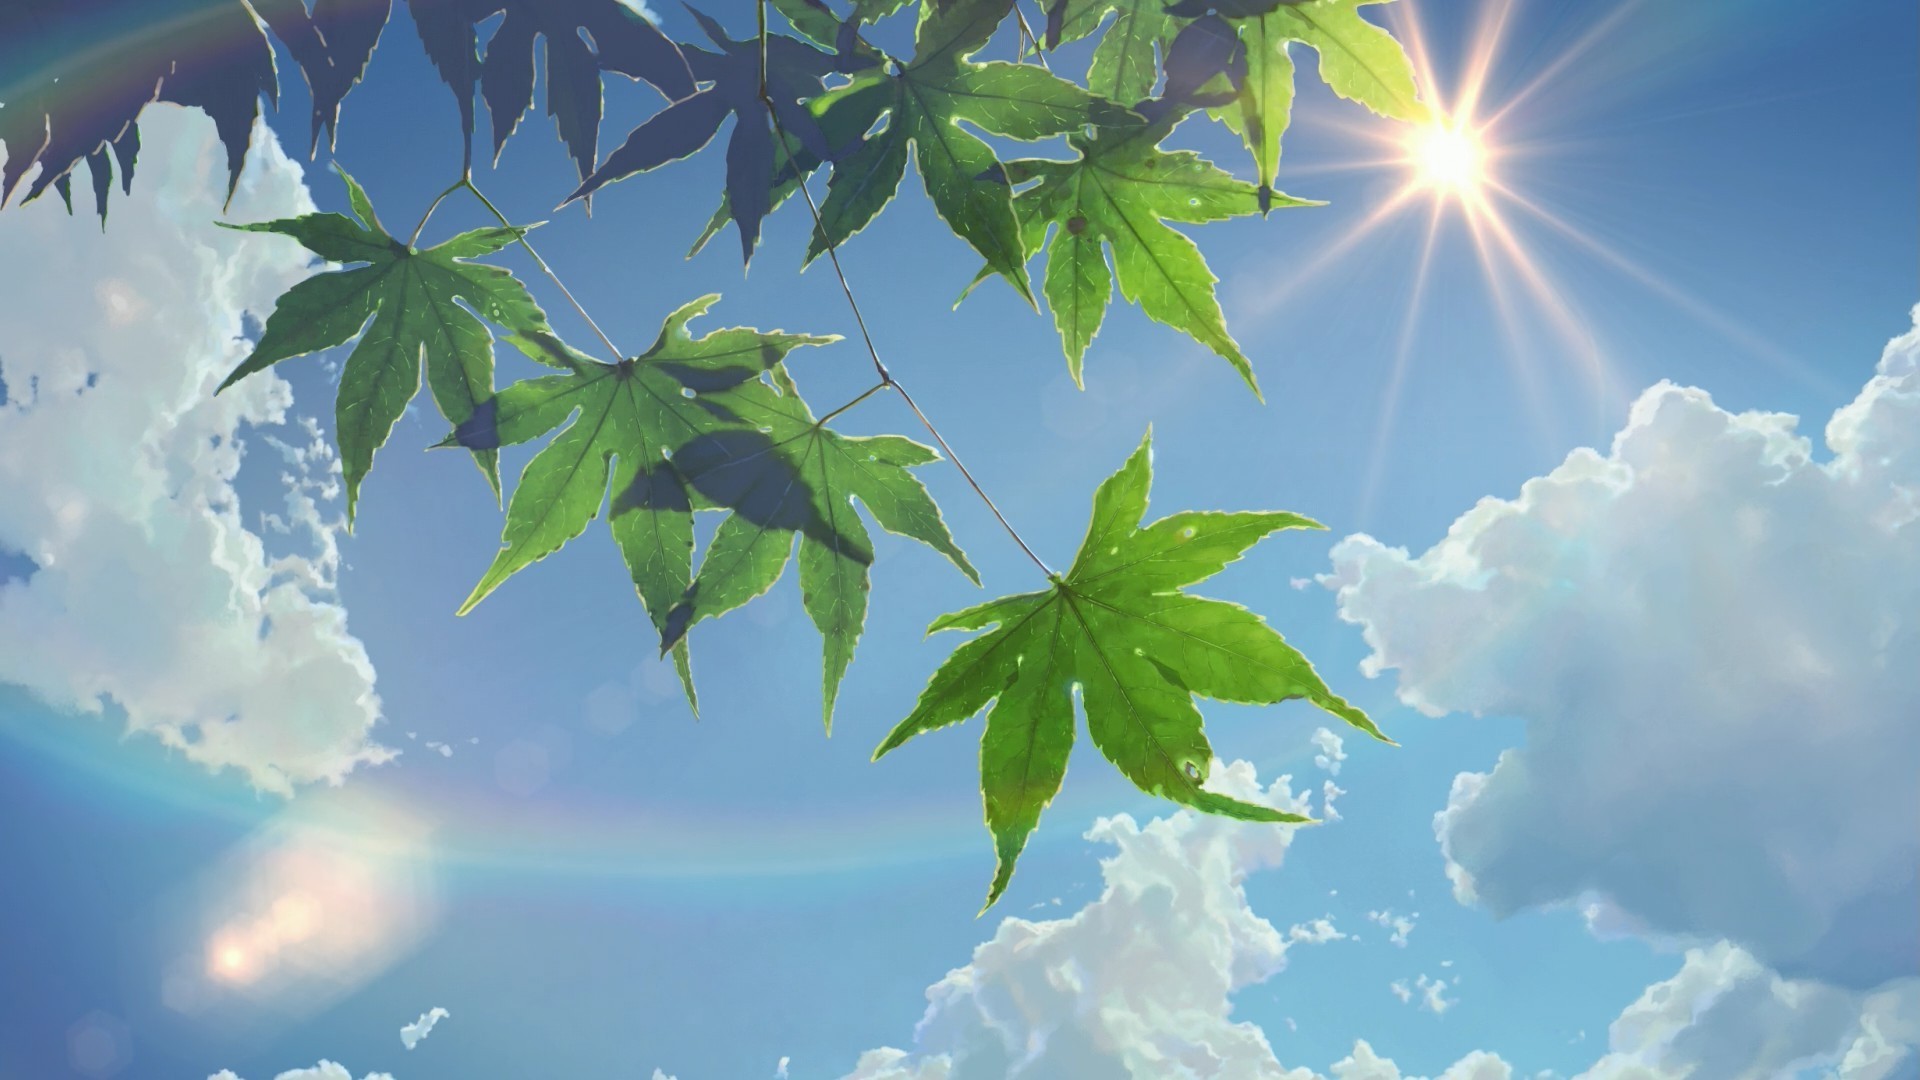 마코토 신카이 벽지,하늘,잎,나무,자연,초록